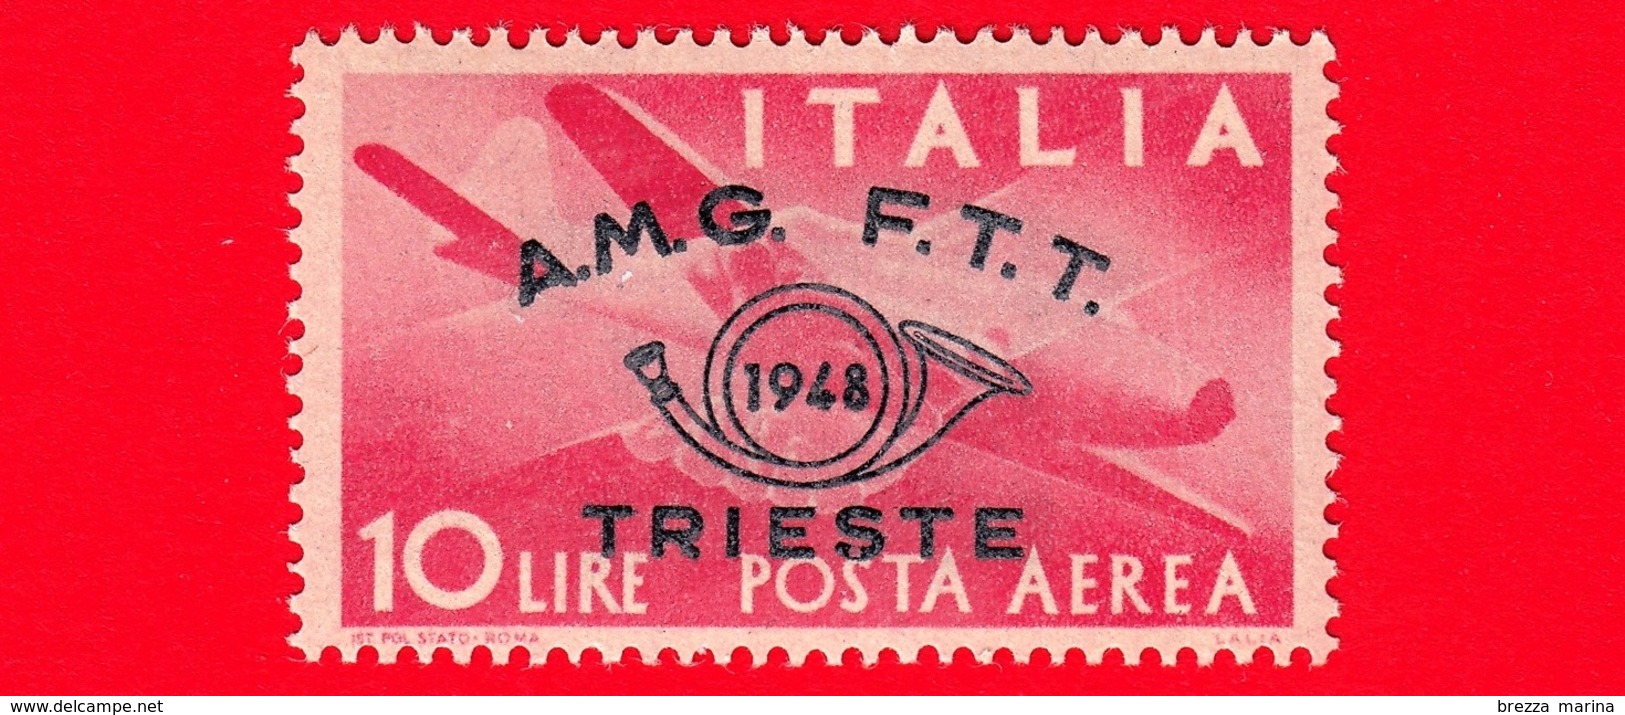 Nuovo - MNH - ITALIA - Trieste - AMG FTT - 1948 - Convegno Filatelico Di Trieste -  POSTA AEREA - Stretta Di Mano, Capro - Luftpost